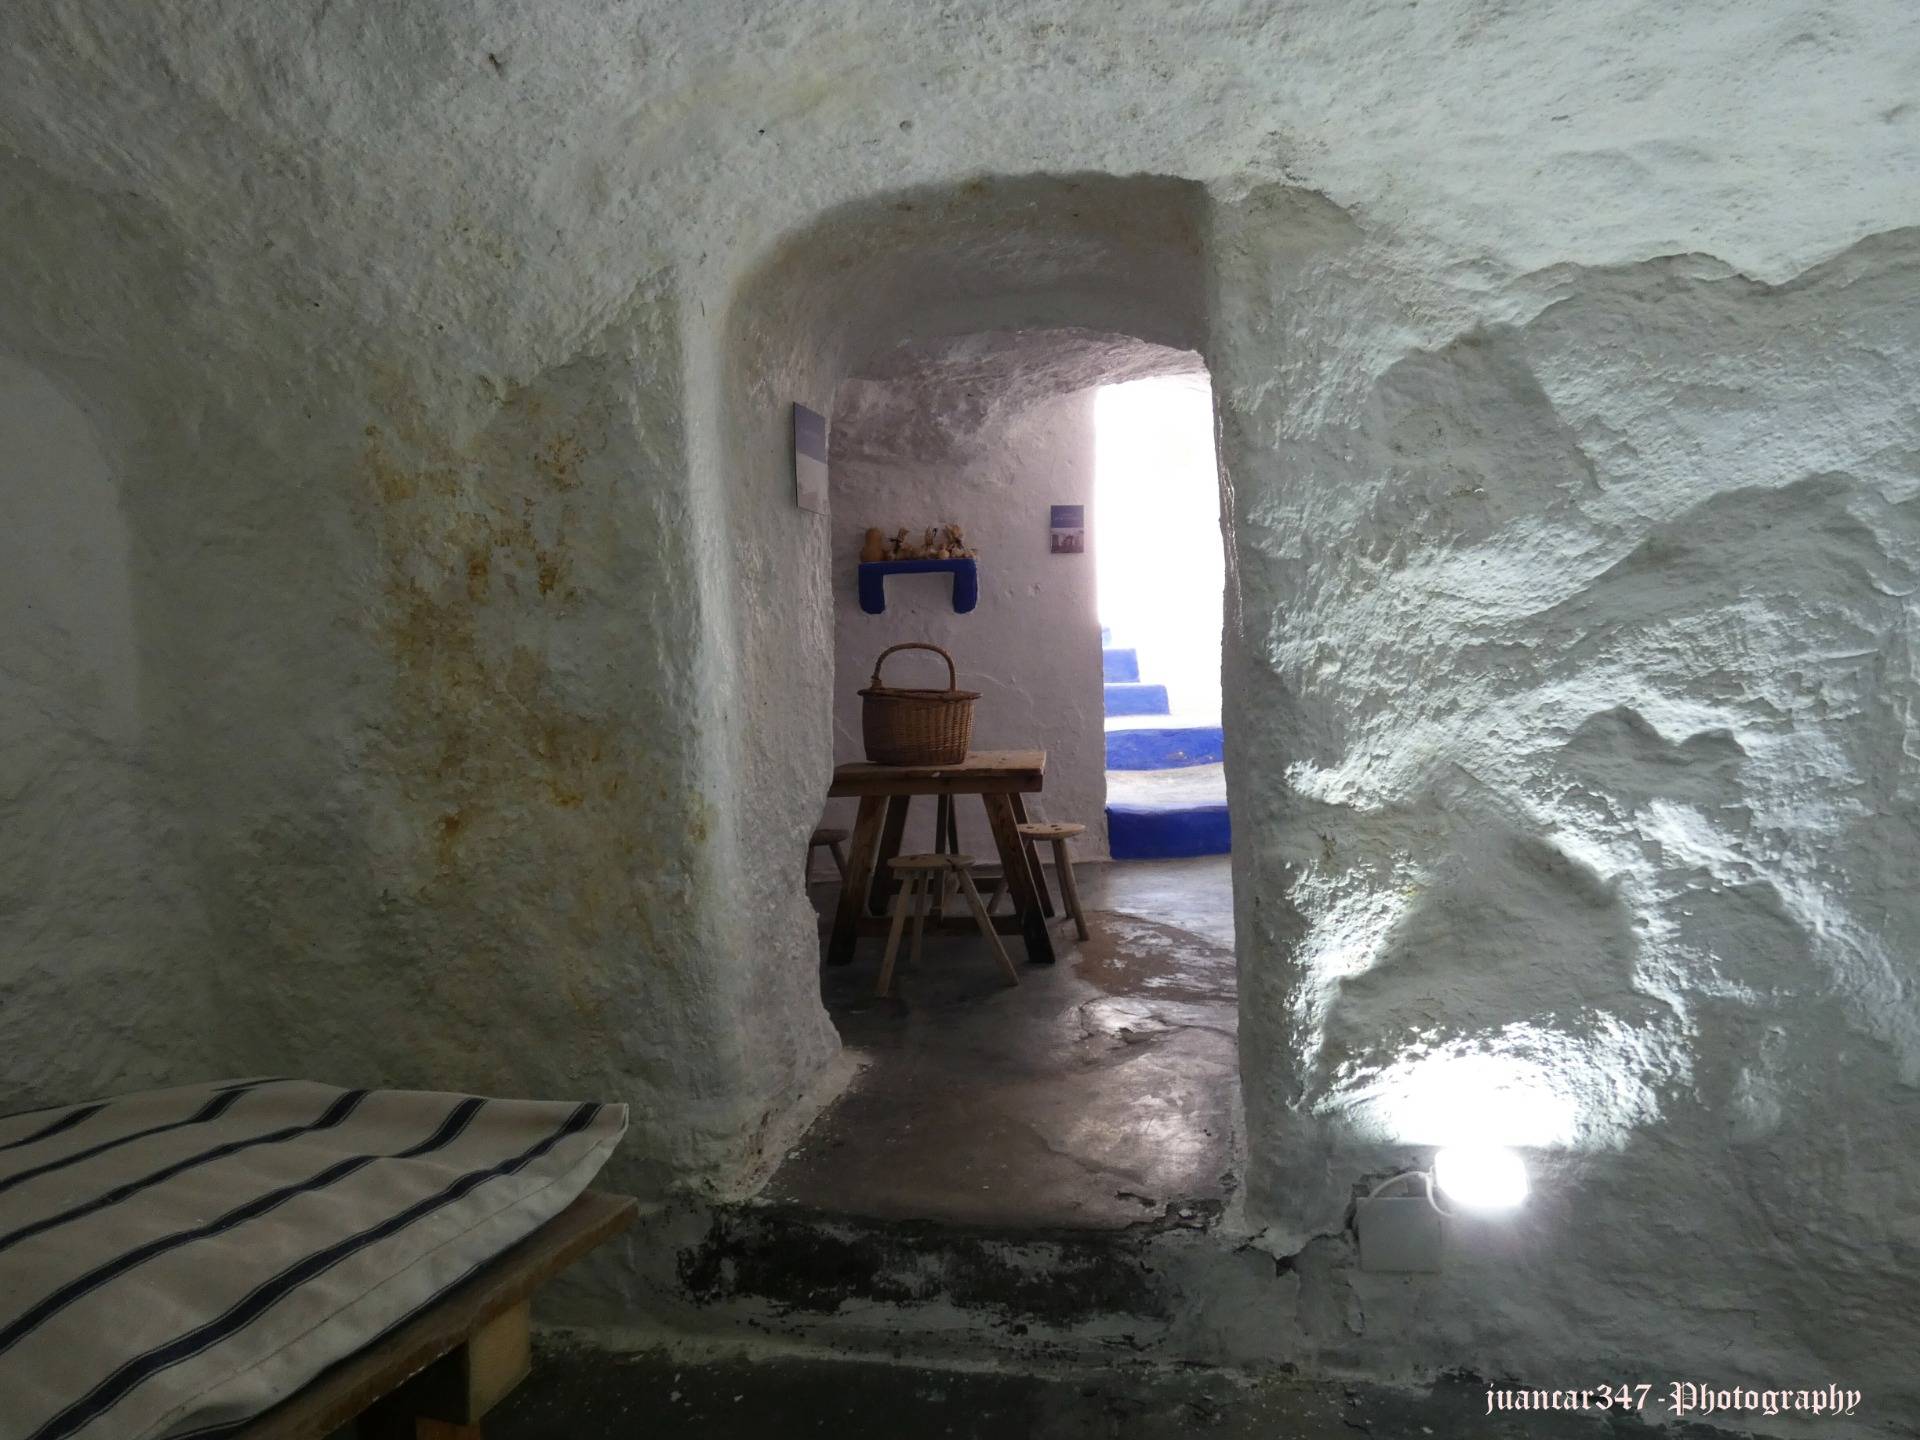 Visiting a cave house in Campo de Criptana